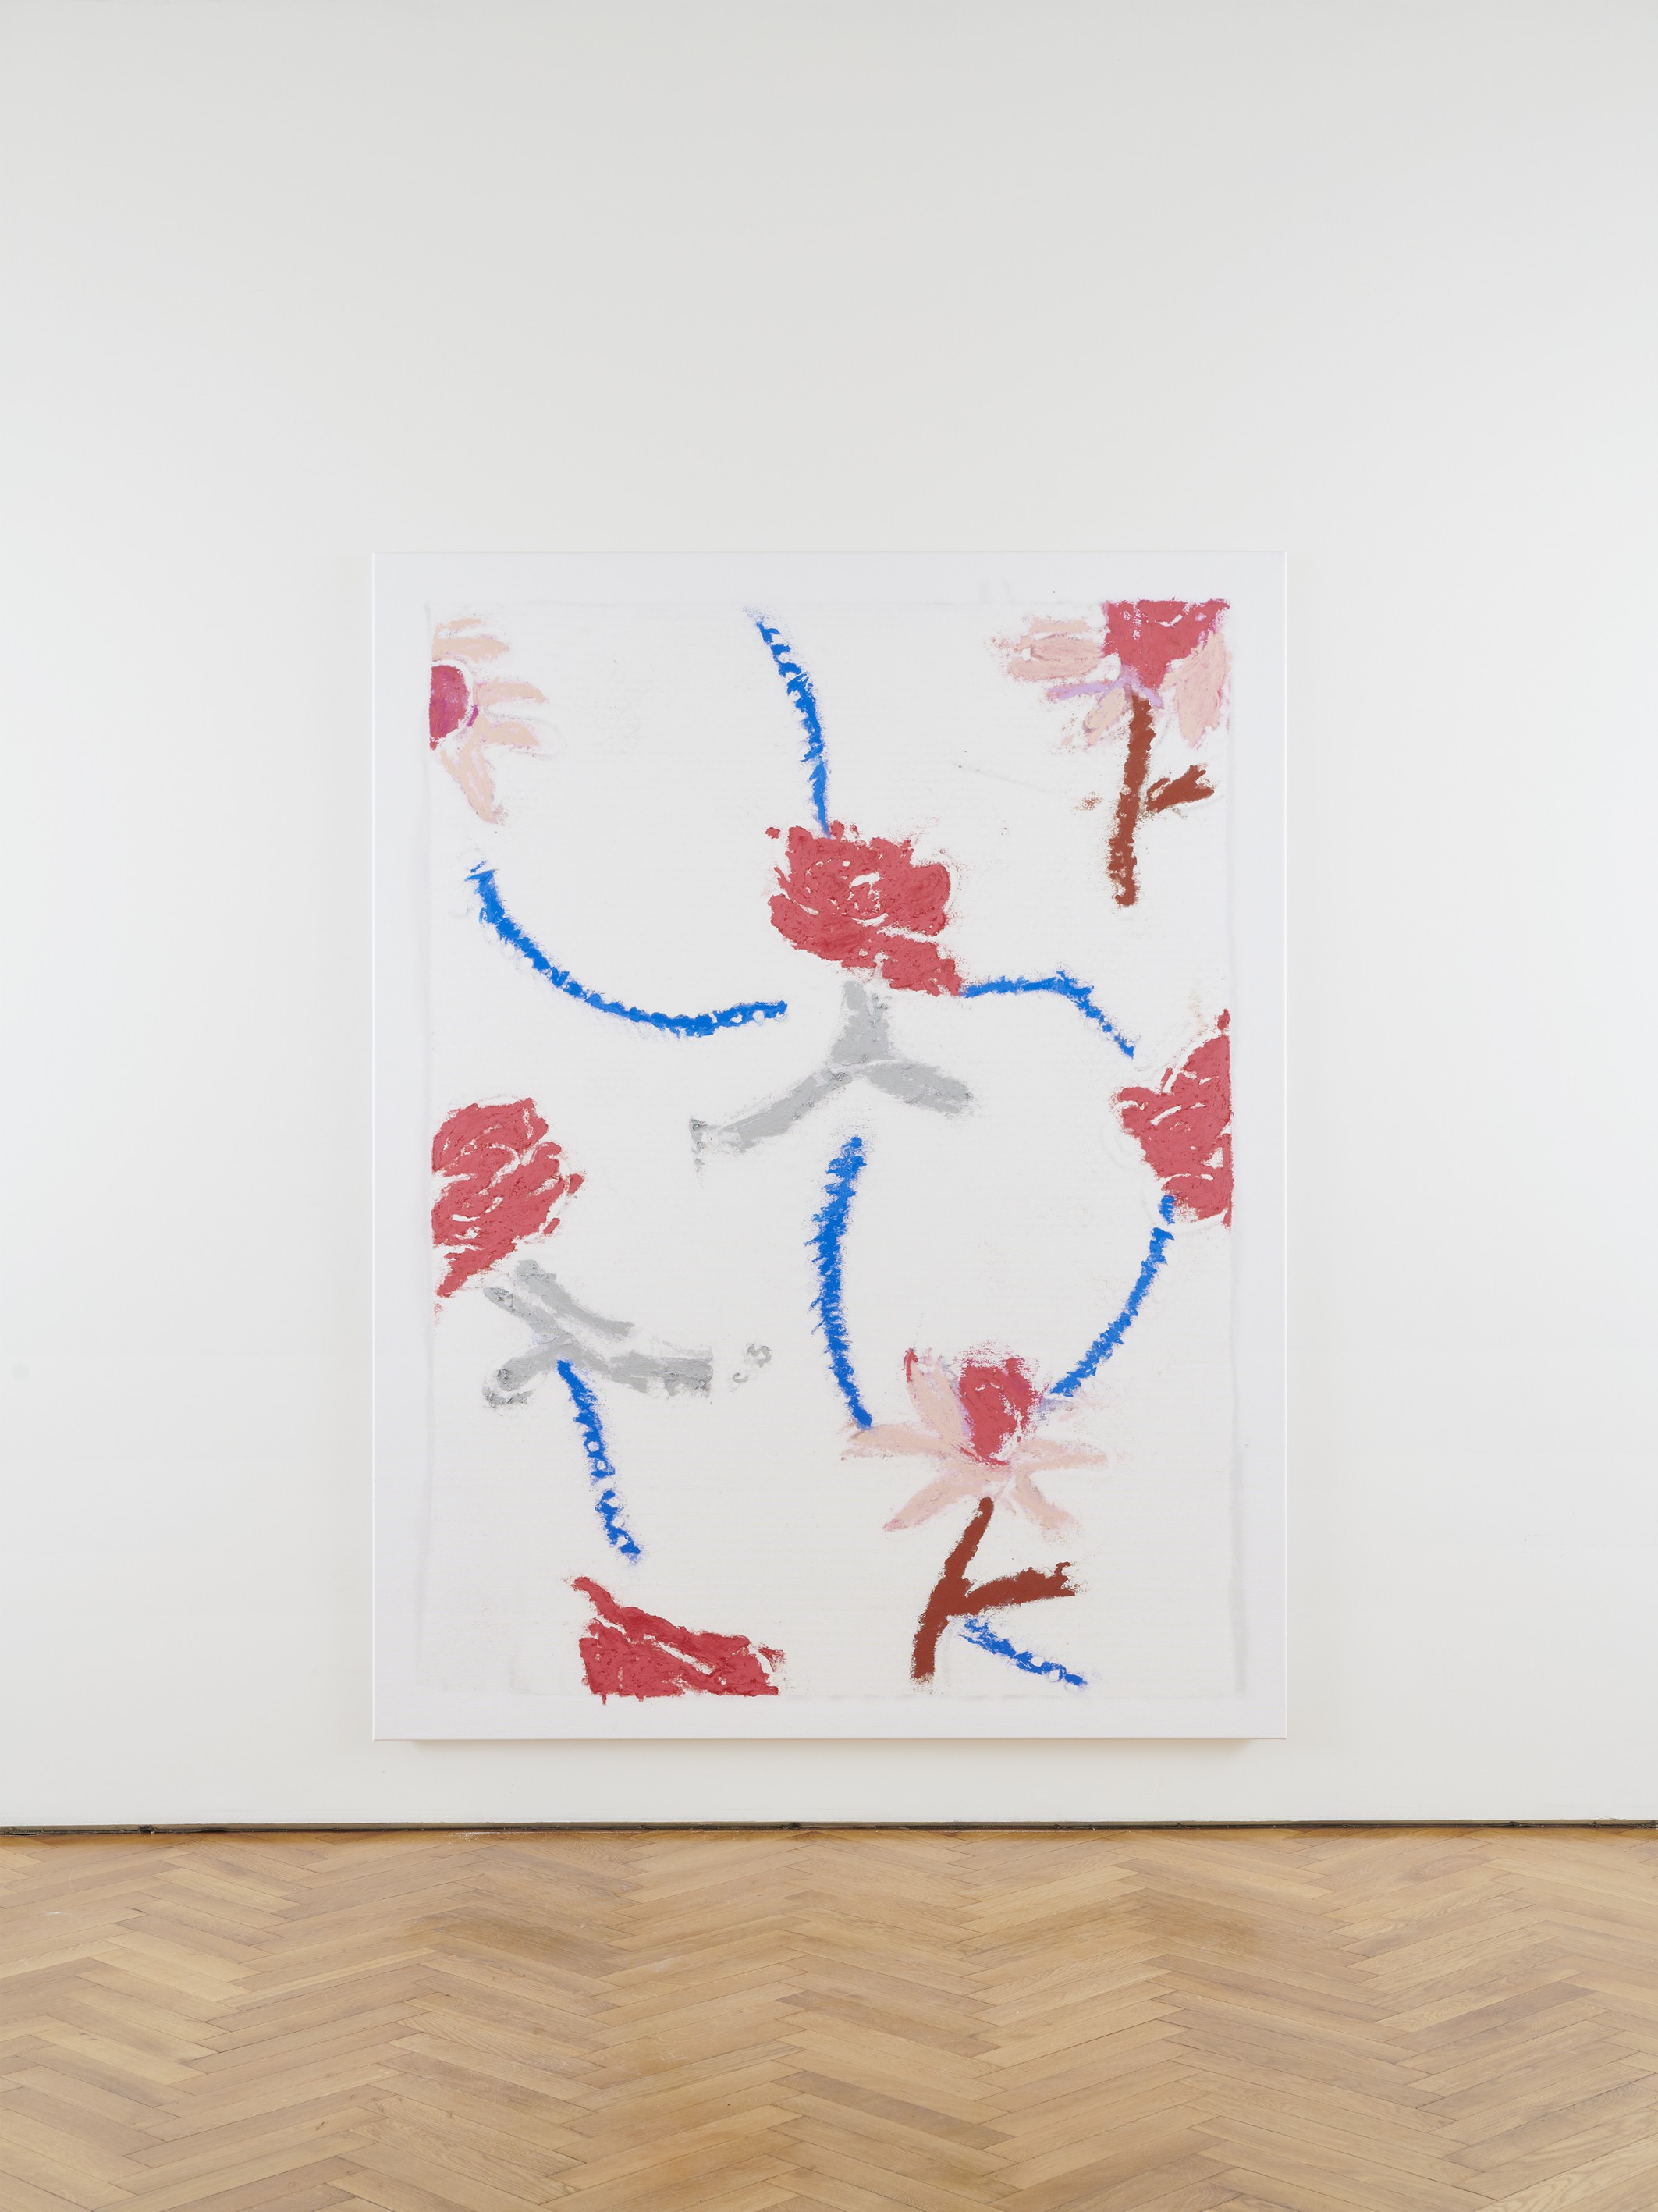 Kaspar Müller, Untitled, 2020, UV cured ink and Sennelier oil pastel on canvas, 210 × 160 × 3 cm